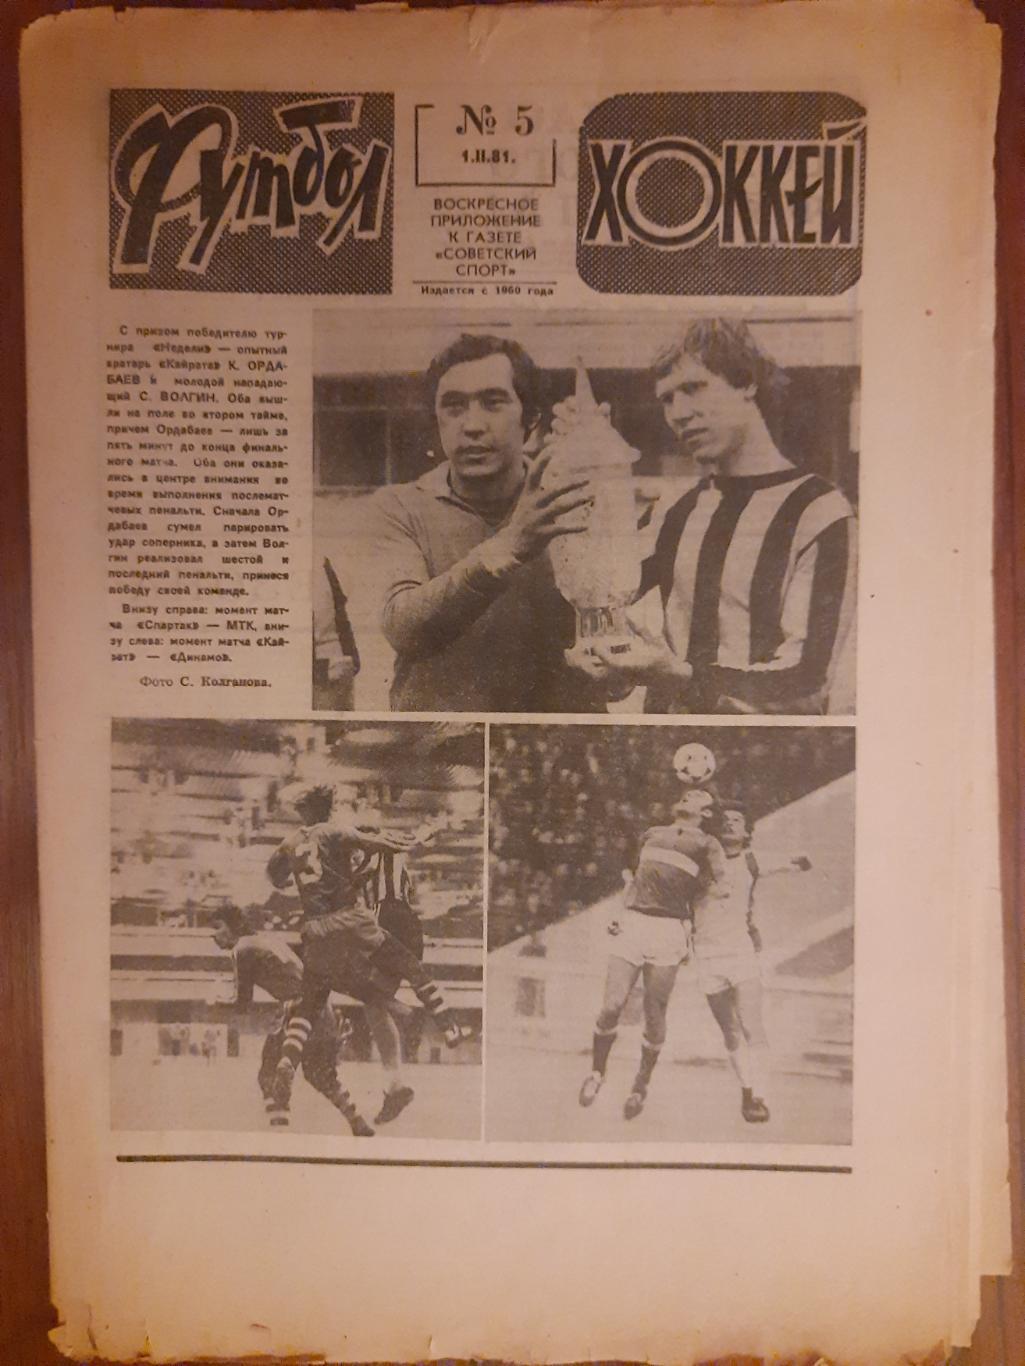 еженедельник футбол-хоккей #5 ,1981